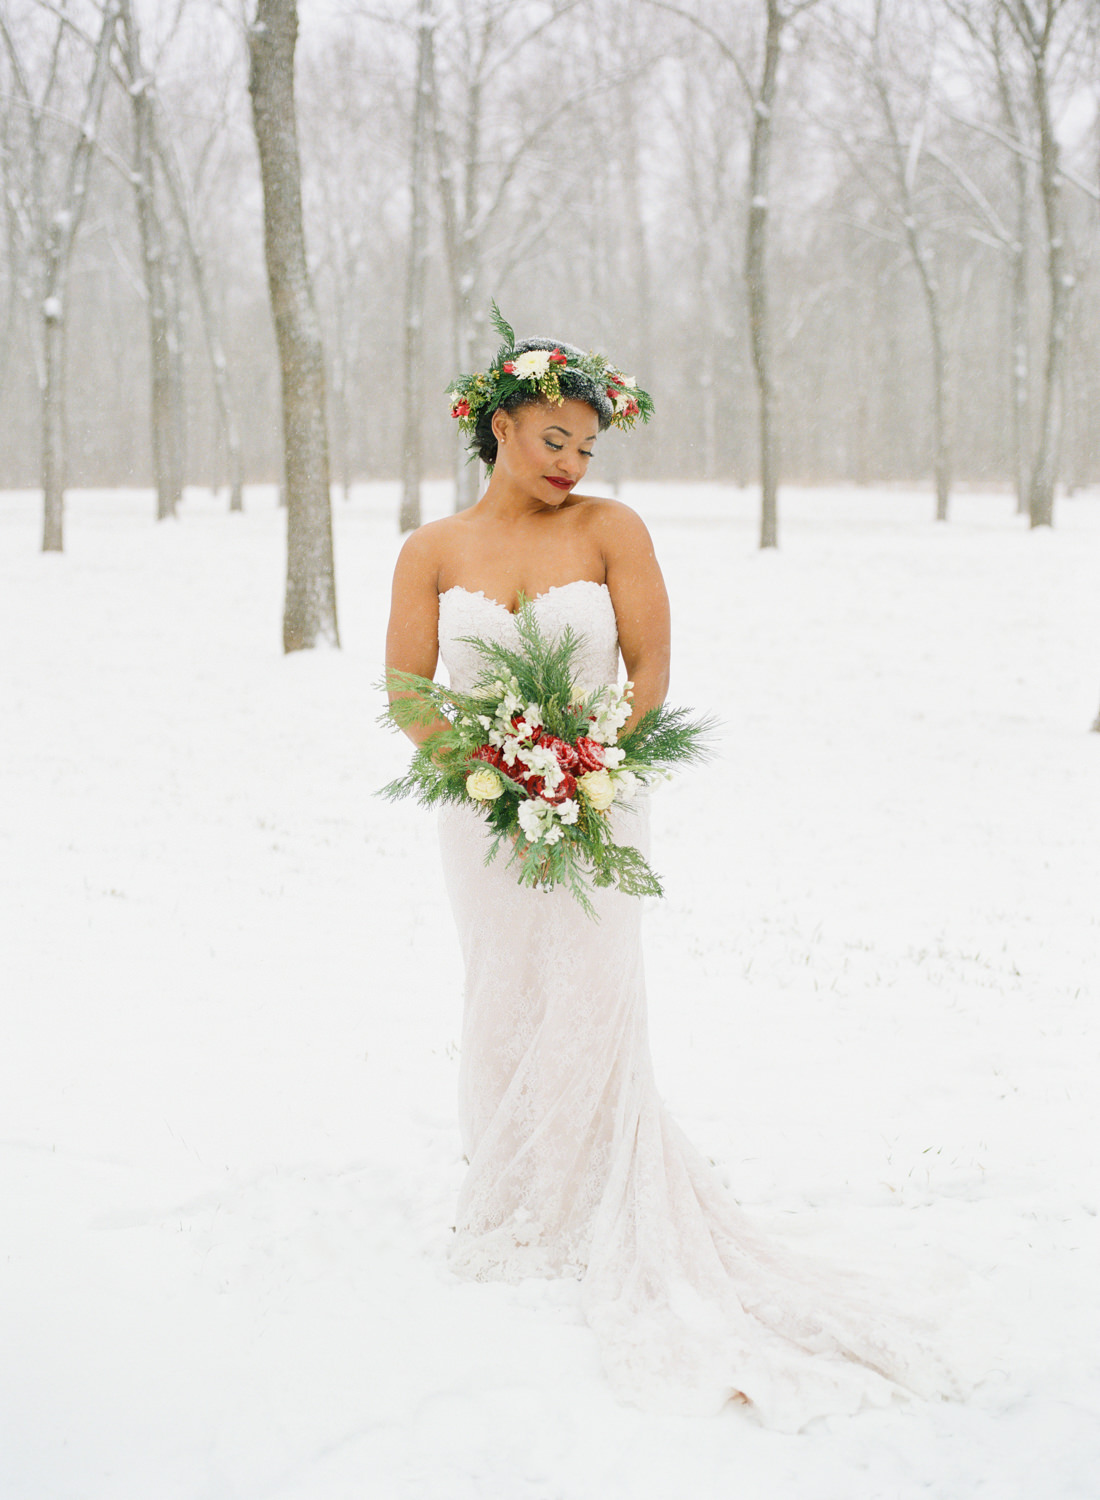 Winter wedding bride with flower crown in snow; St. Louis fine art film wedding photographer Erica Robnett Photography